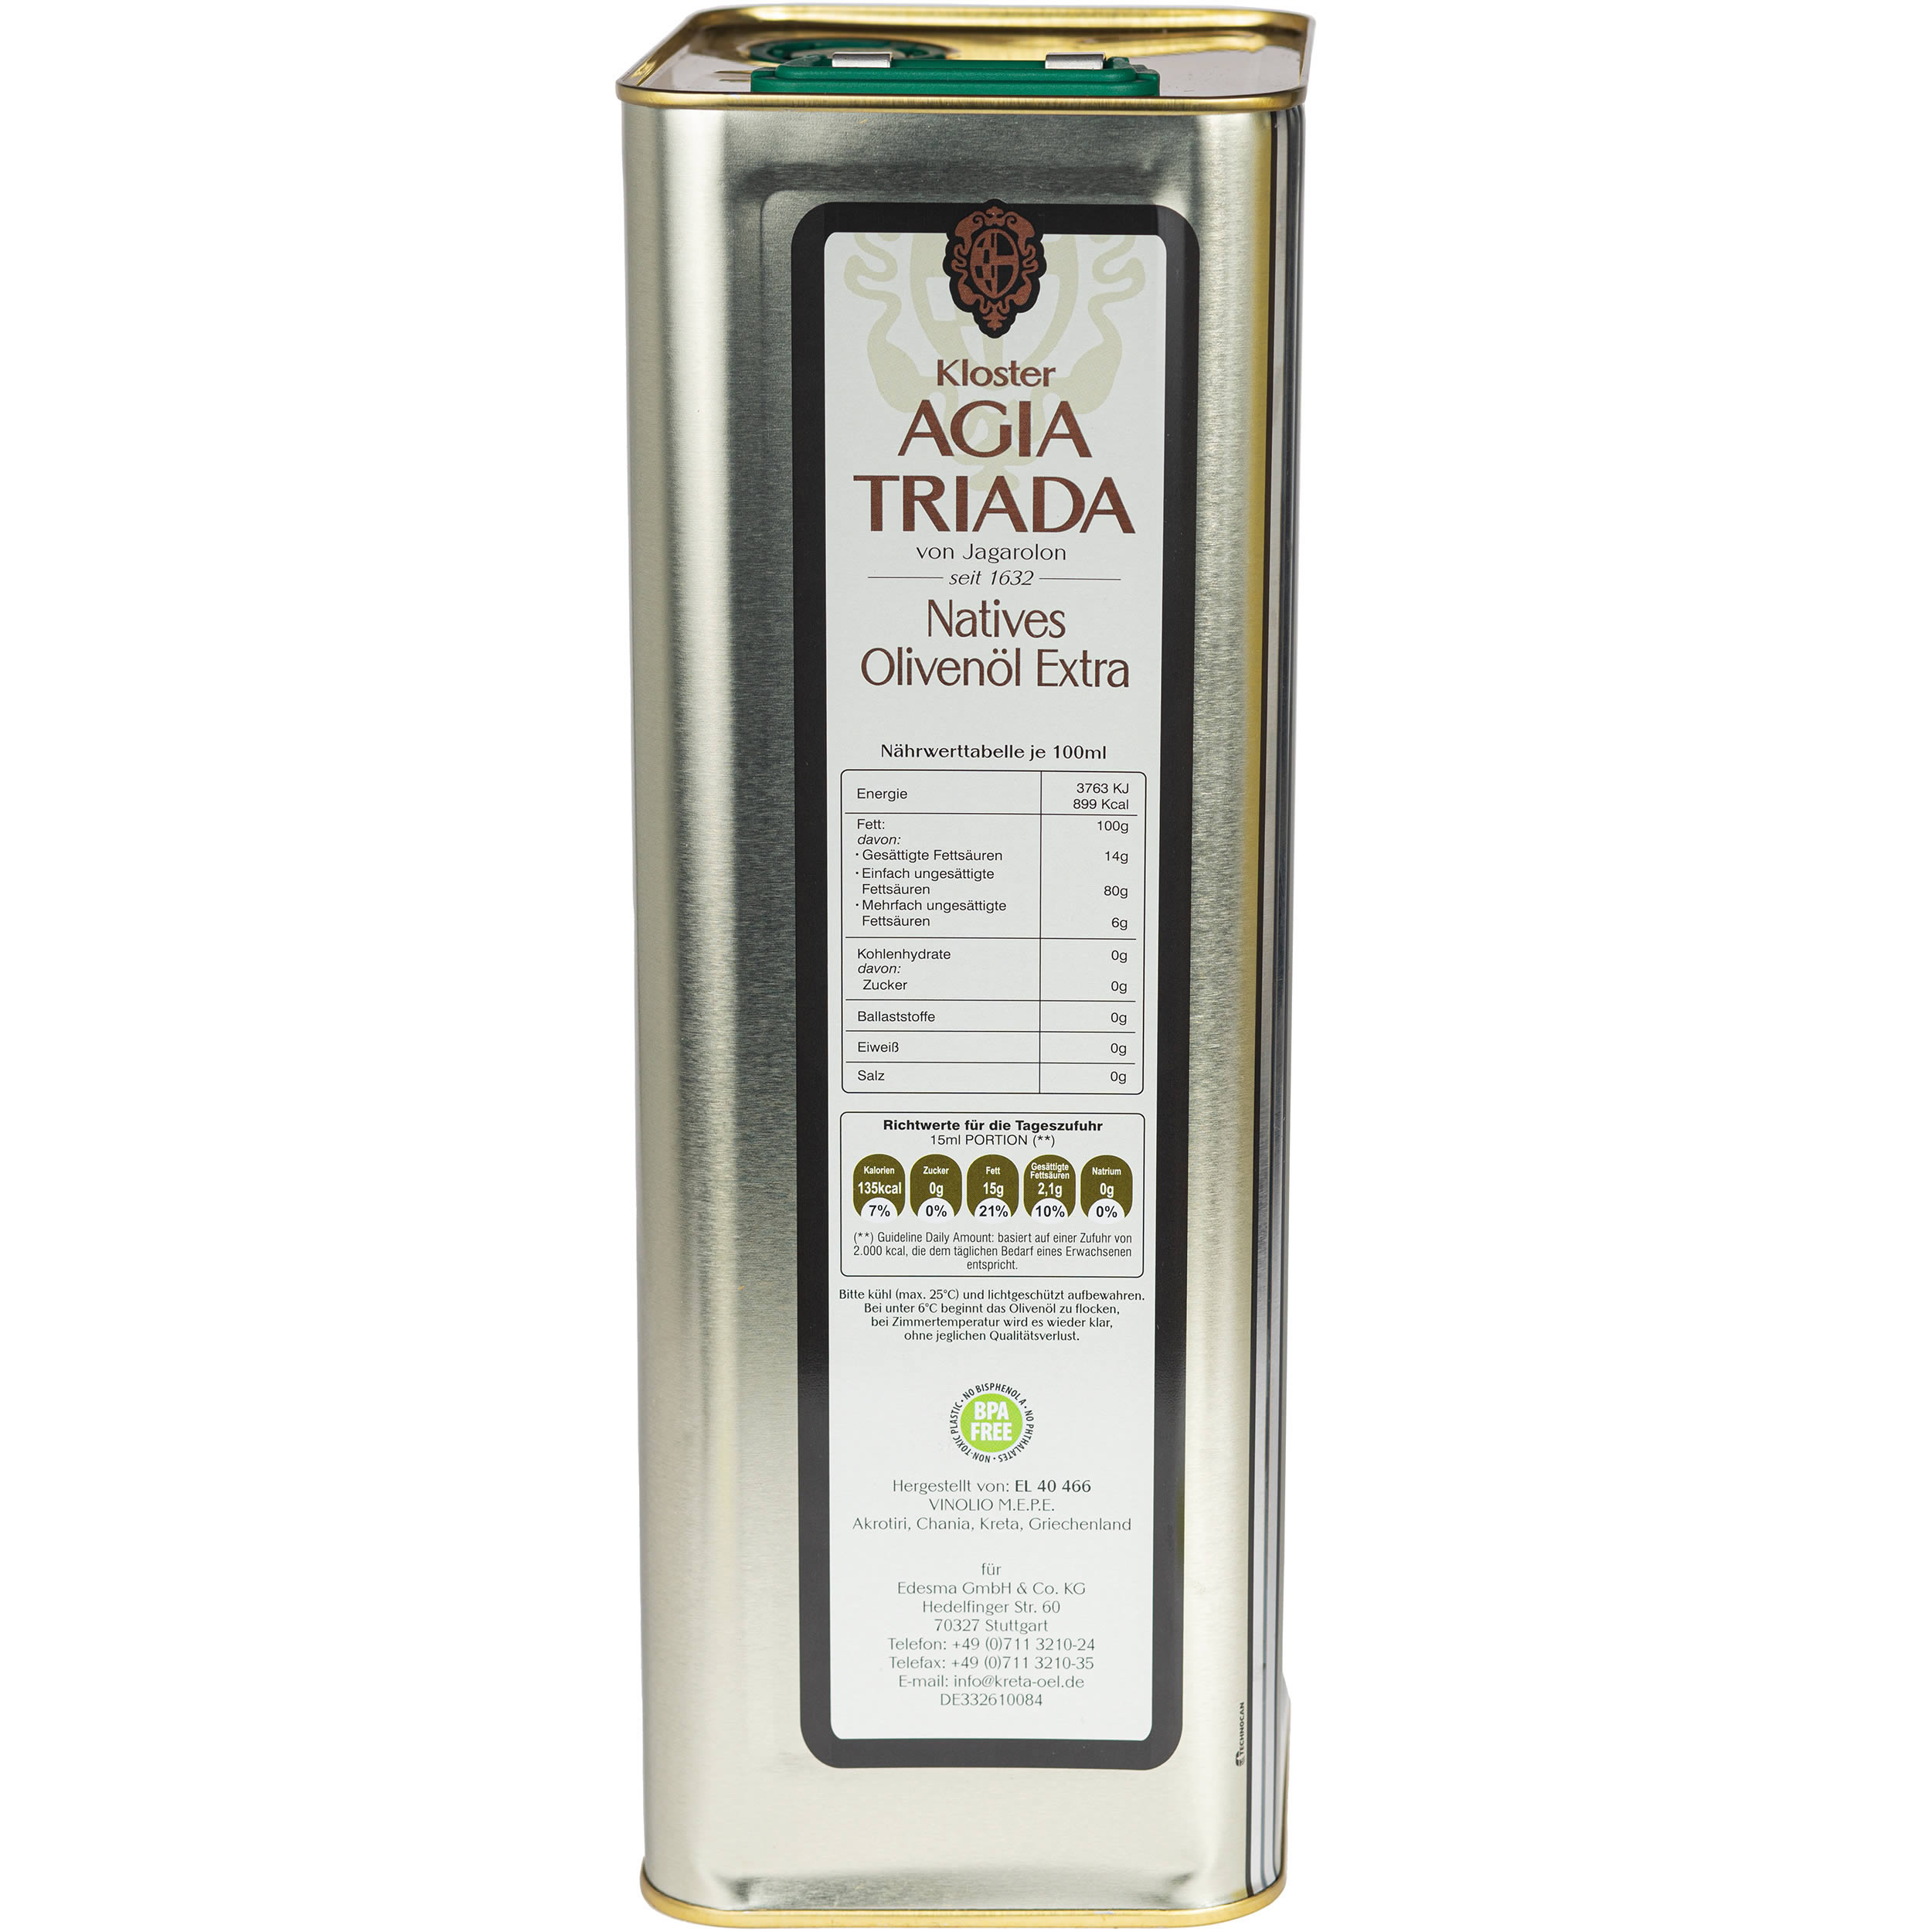 Agia Triada - Extra natives Olivenöl 5 l